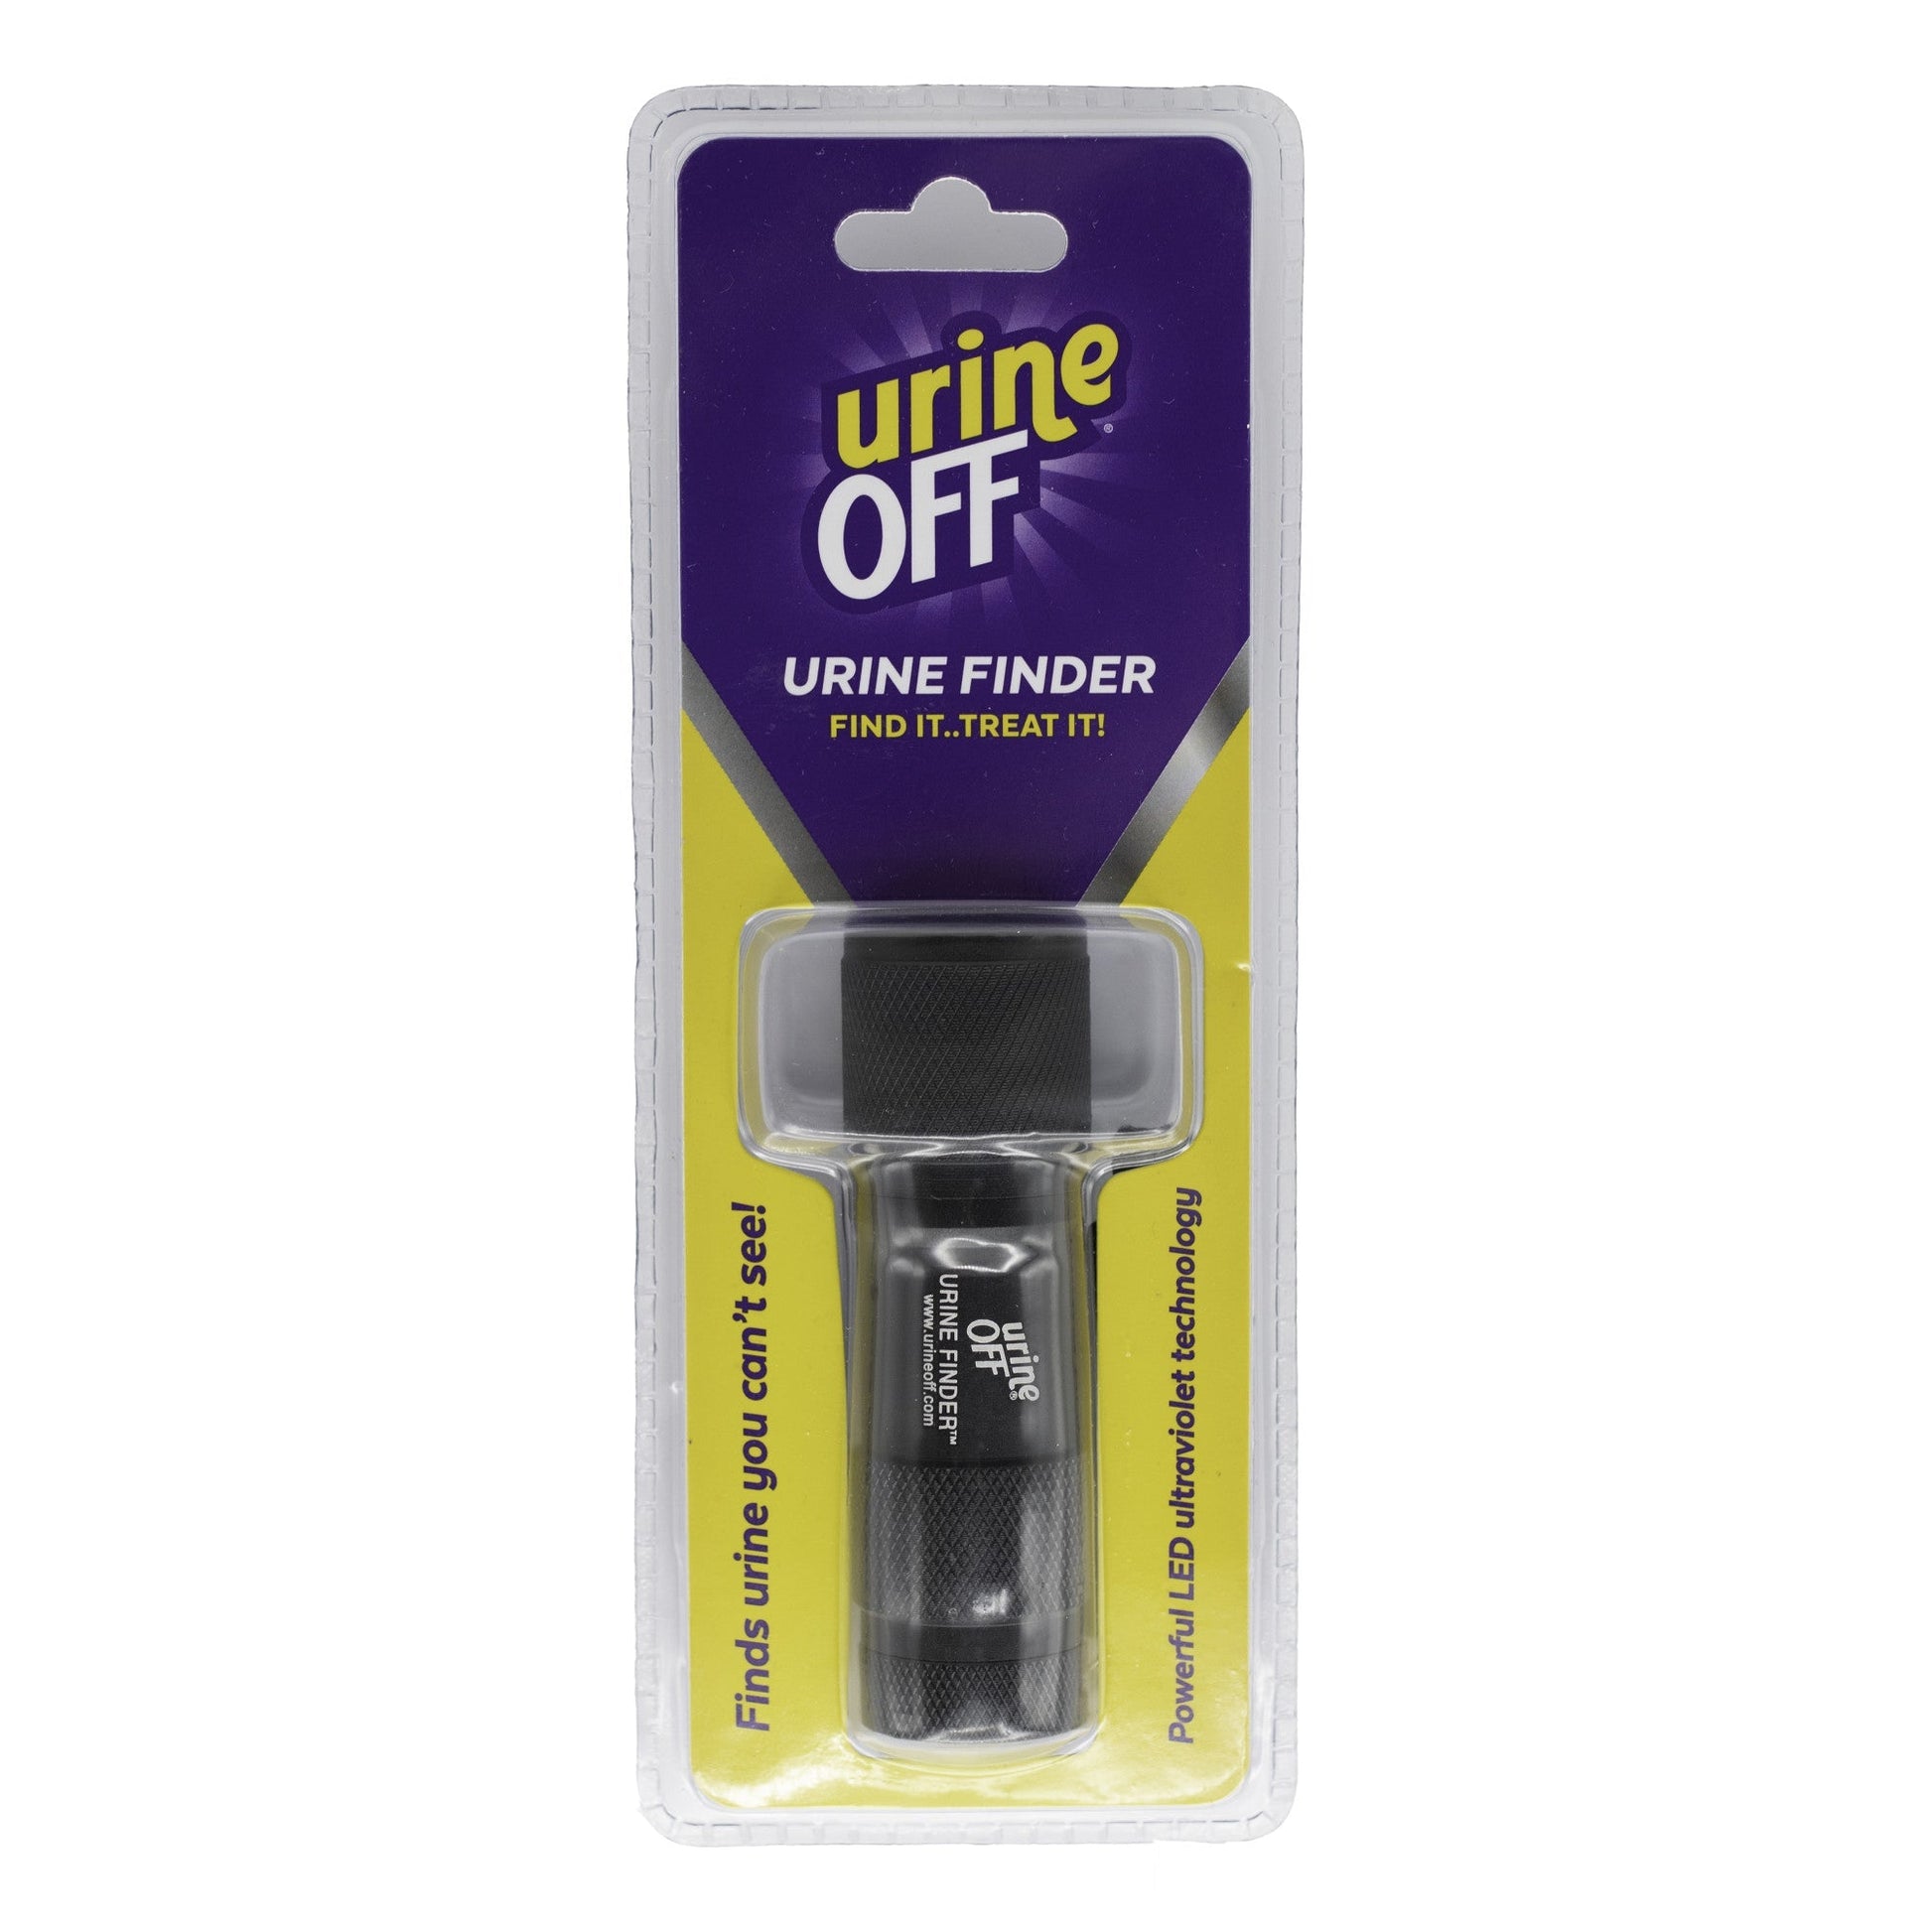 Urine Off Hi-Power LED Urine Finder